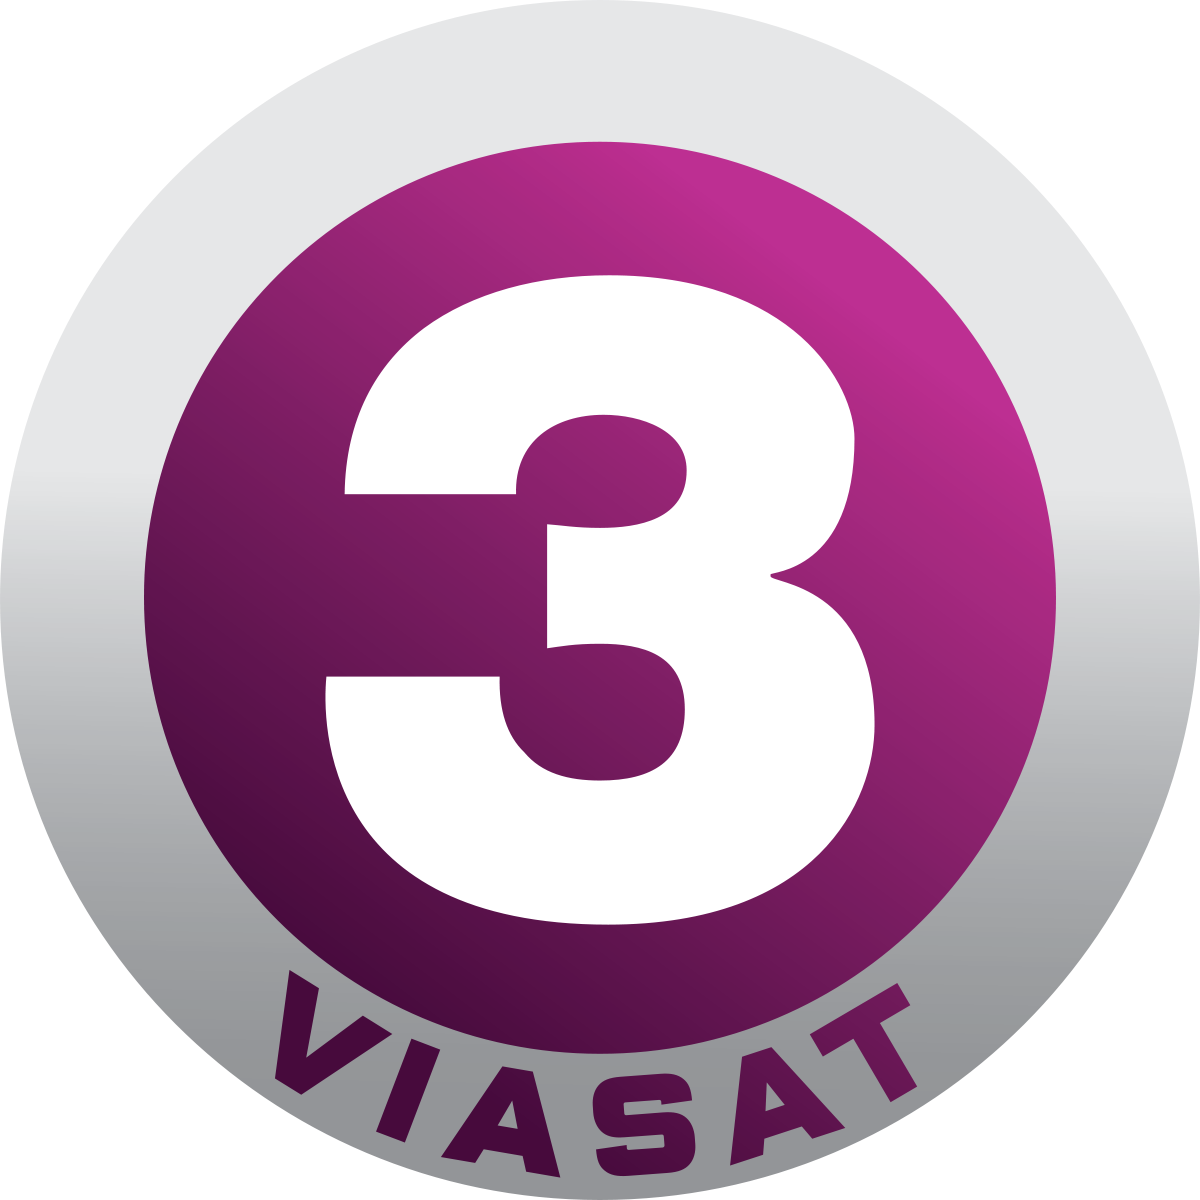 TV3 (Viasat)